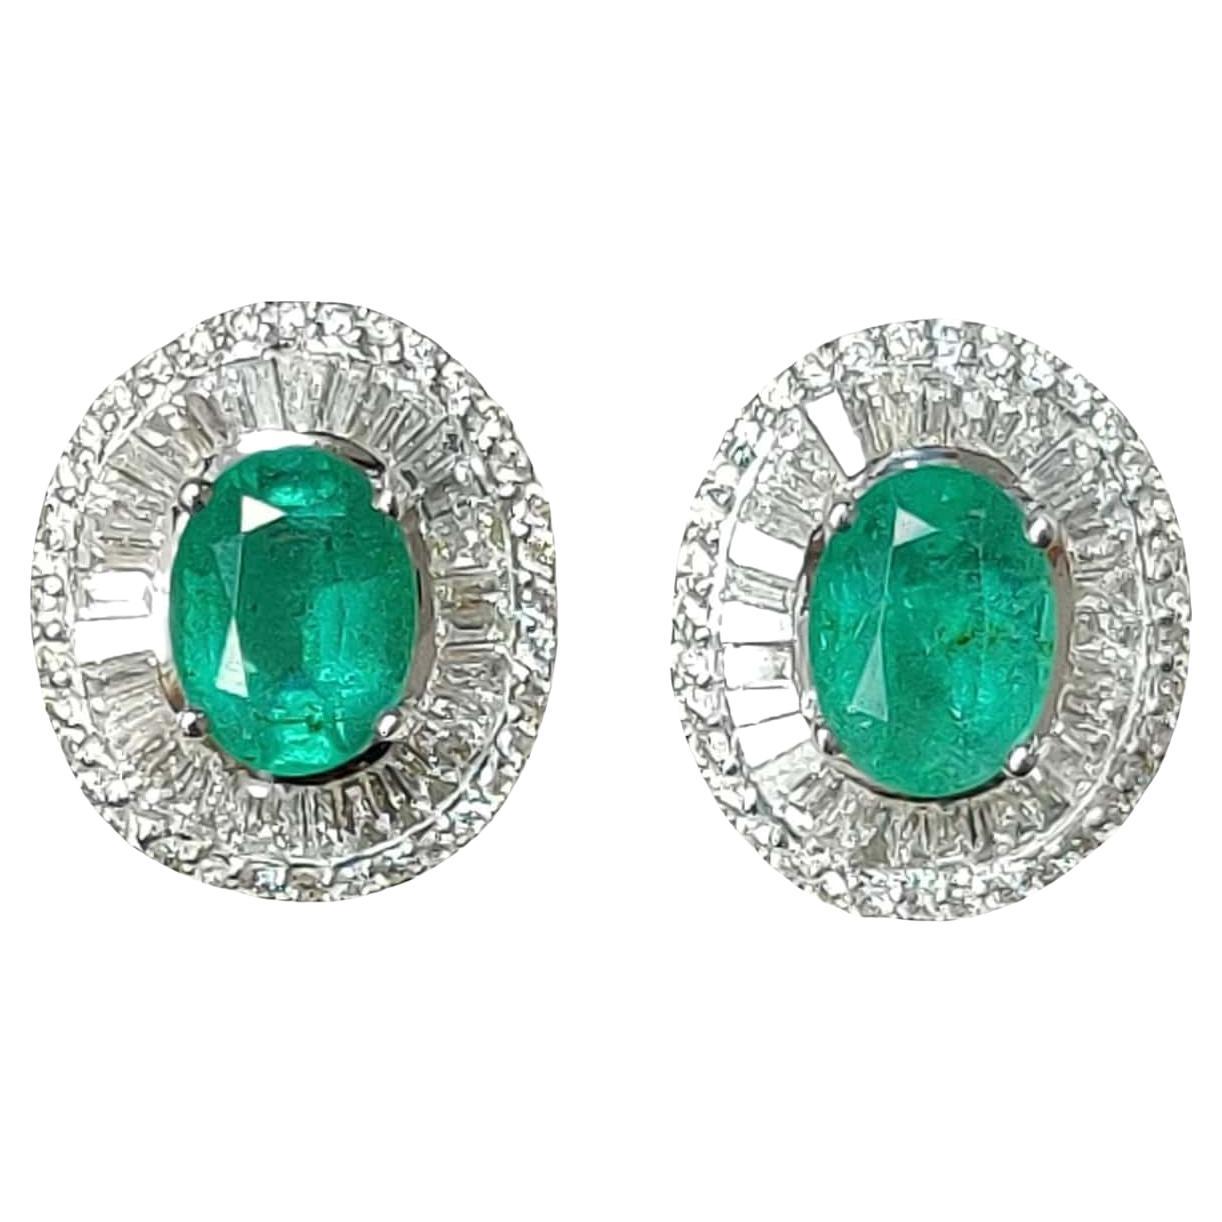 2.77 Ct Zambian Emerald & Diamonds studded Statement Stud Earrings in 18K Gold